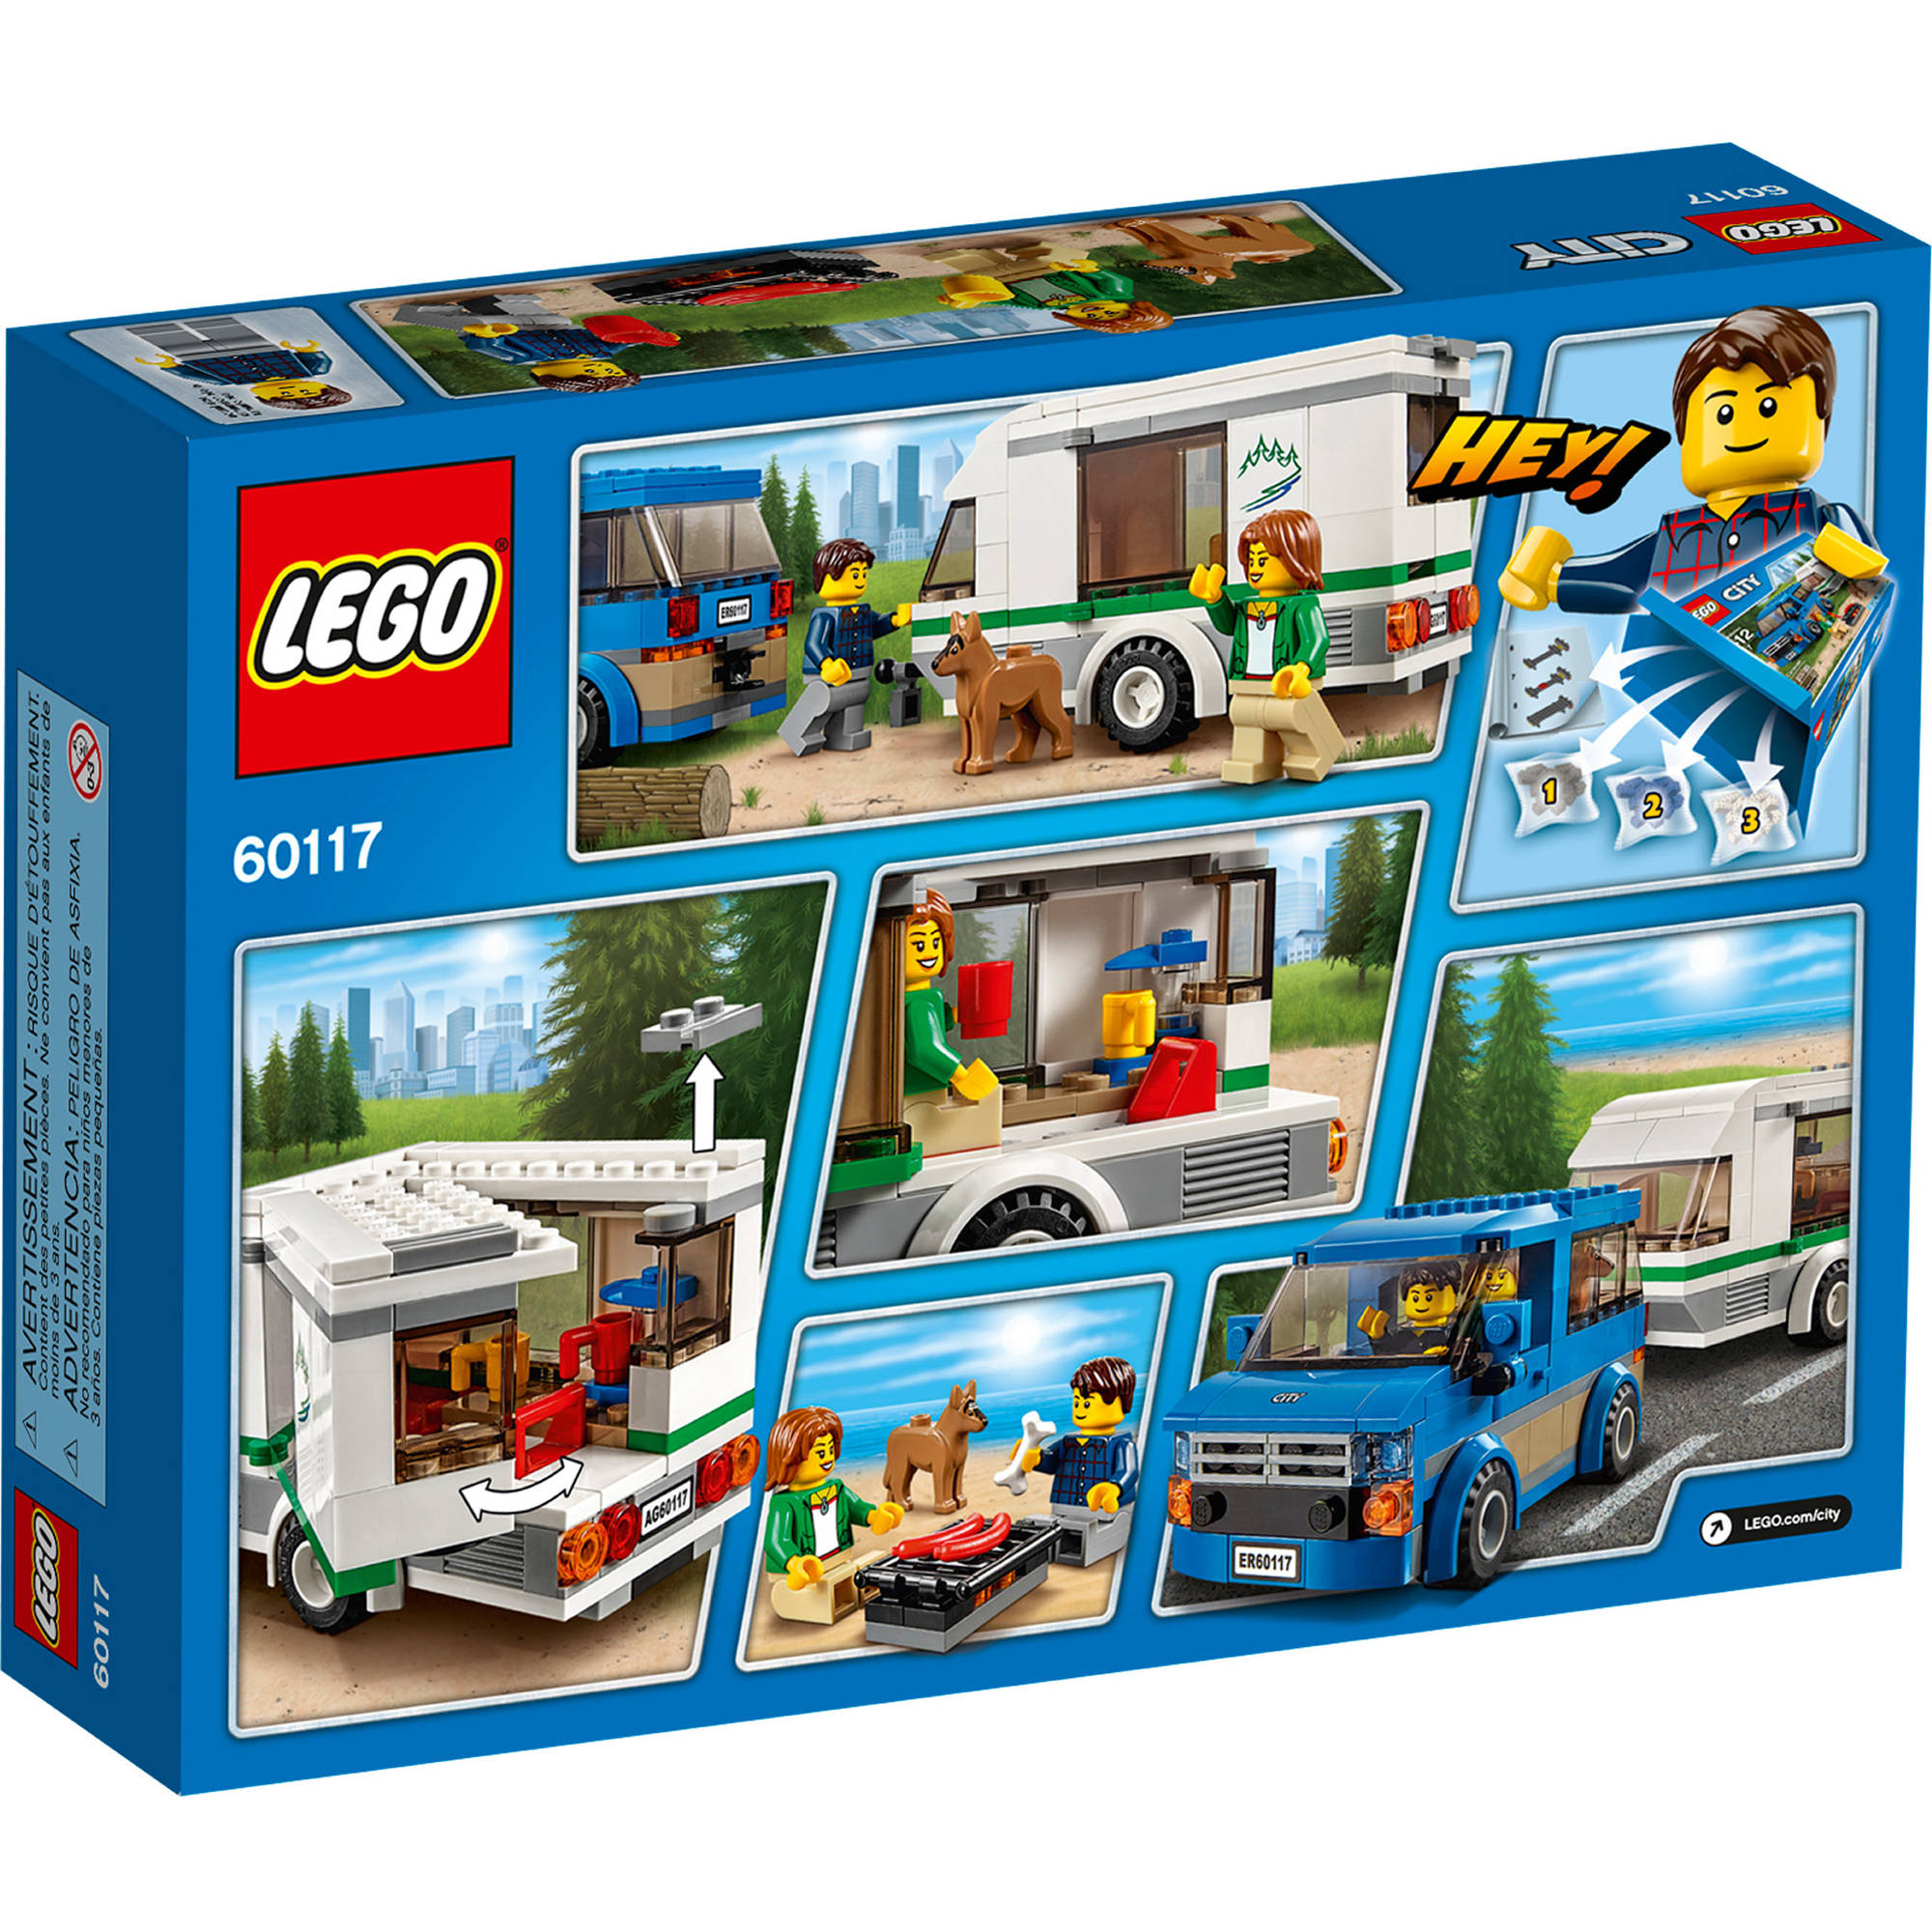 LEGO City Great Vehicles Van & Caravan 60117 - image 2 of 5